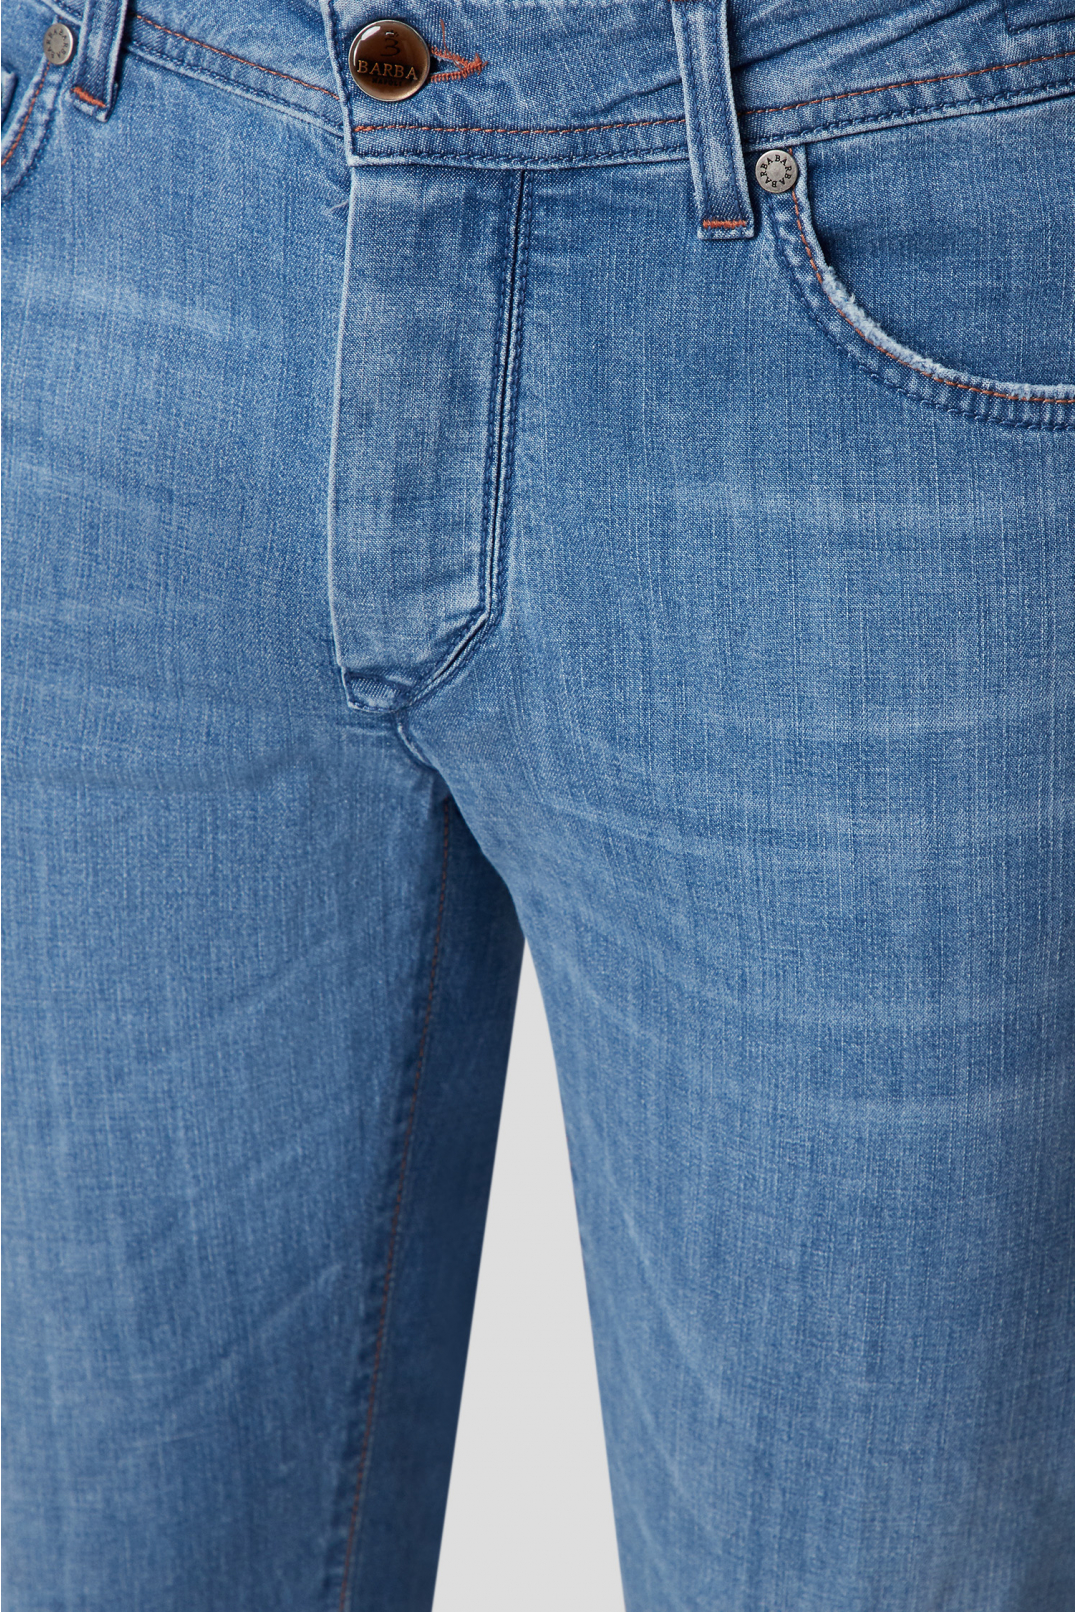 Мужские голубые джинсы - 4